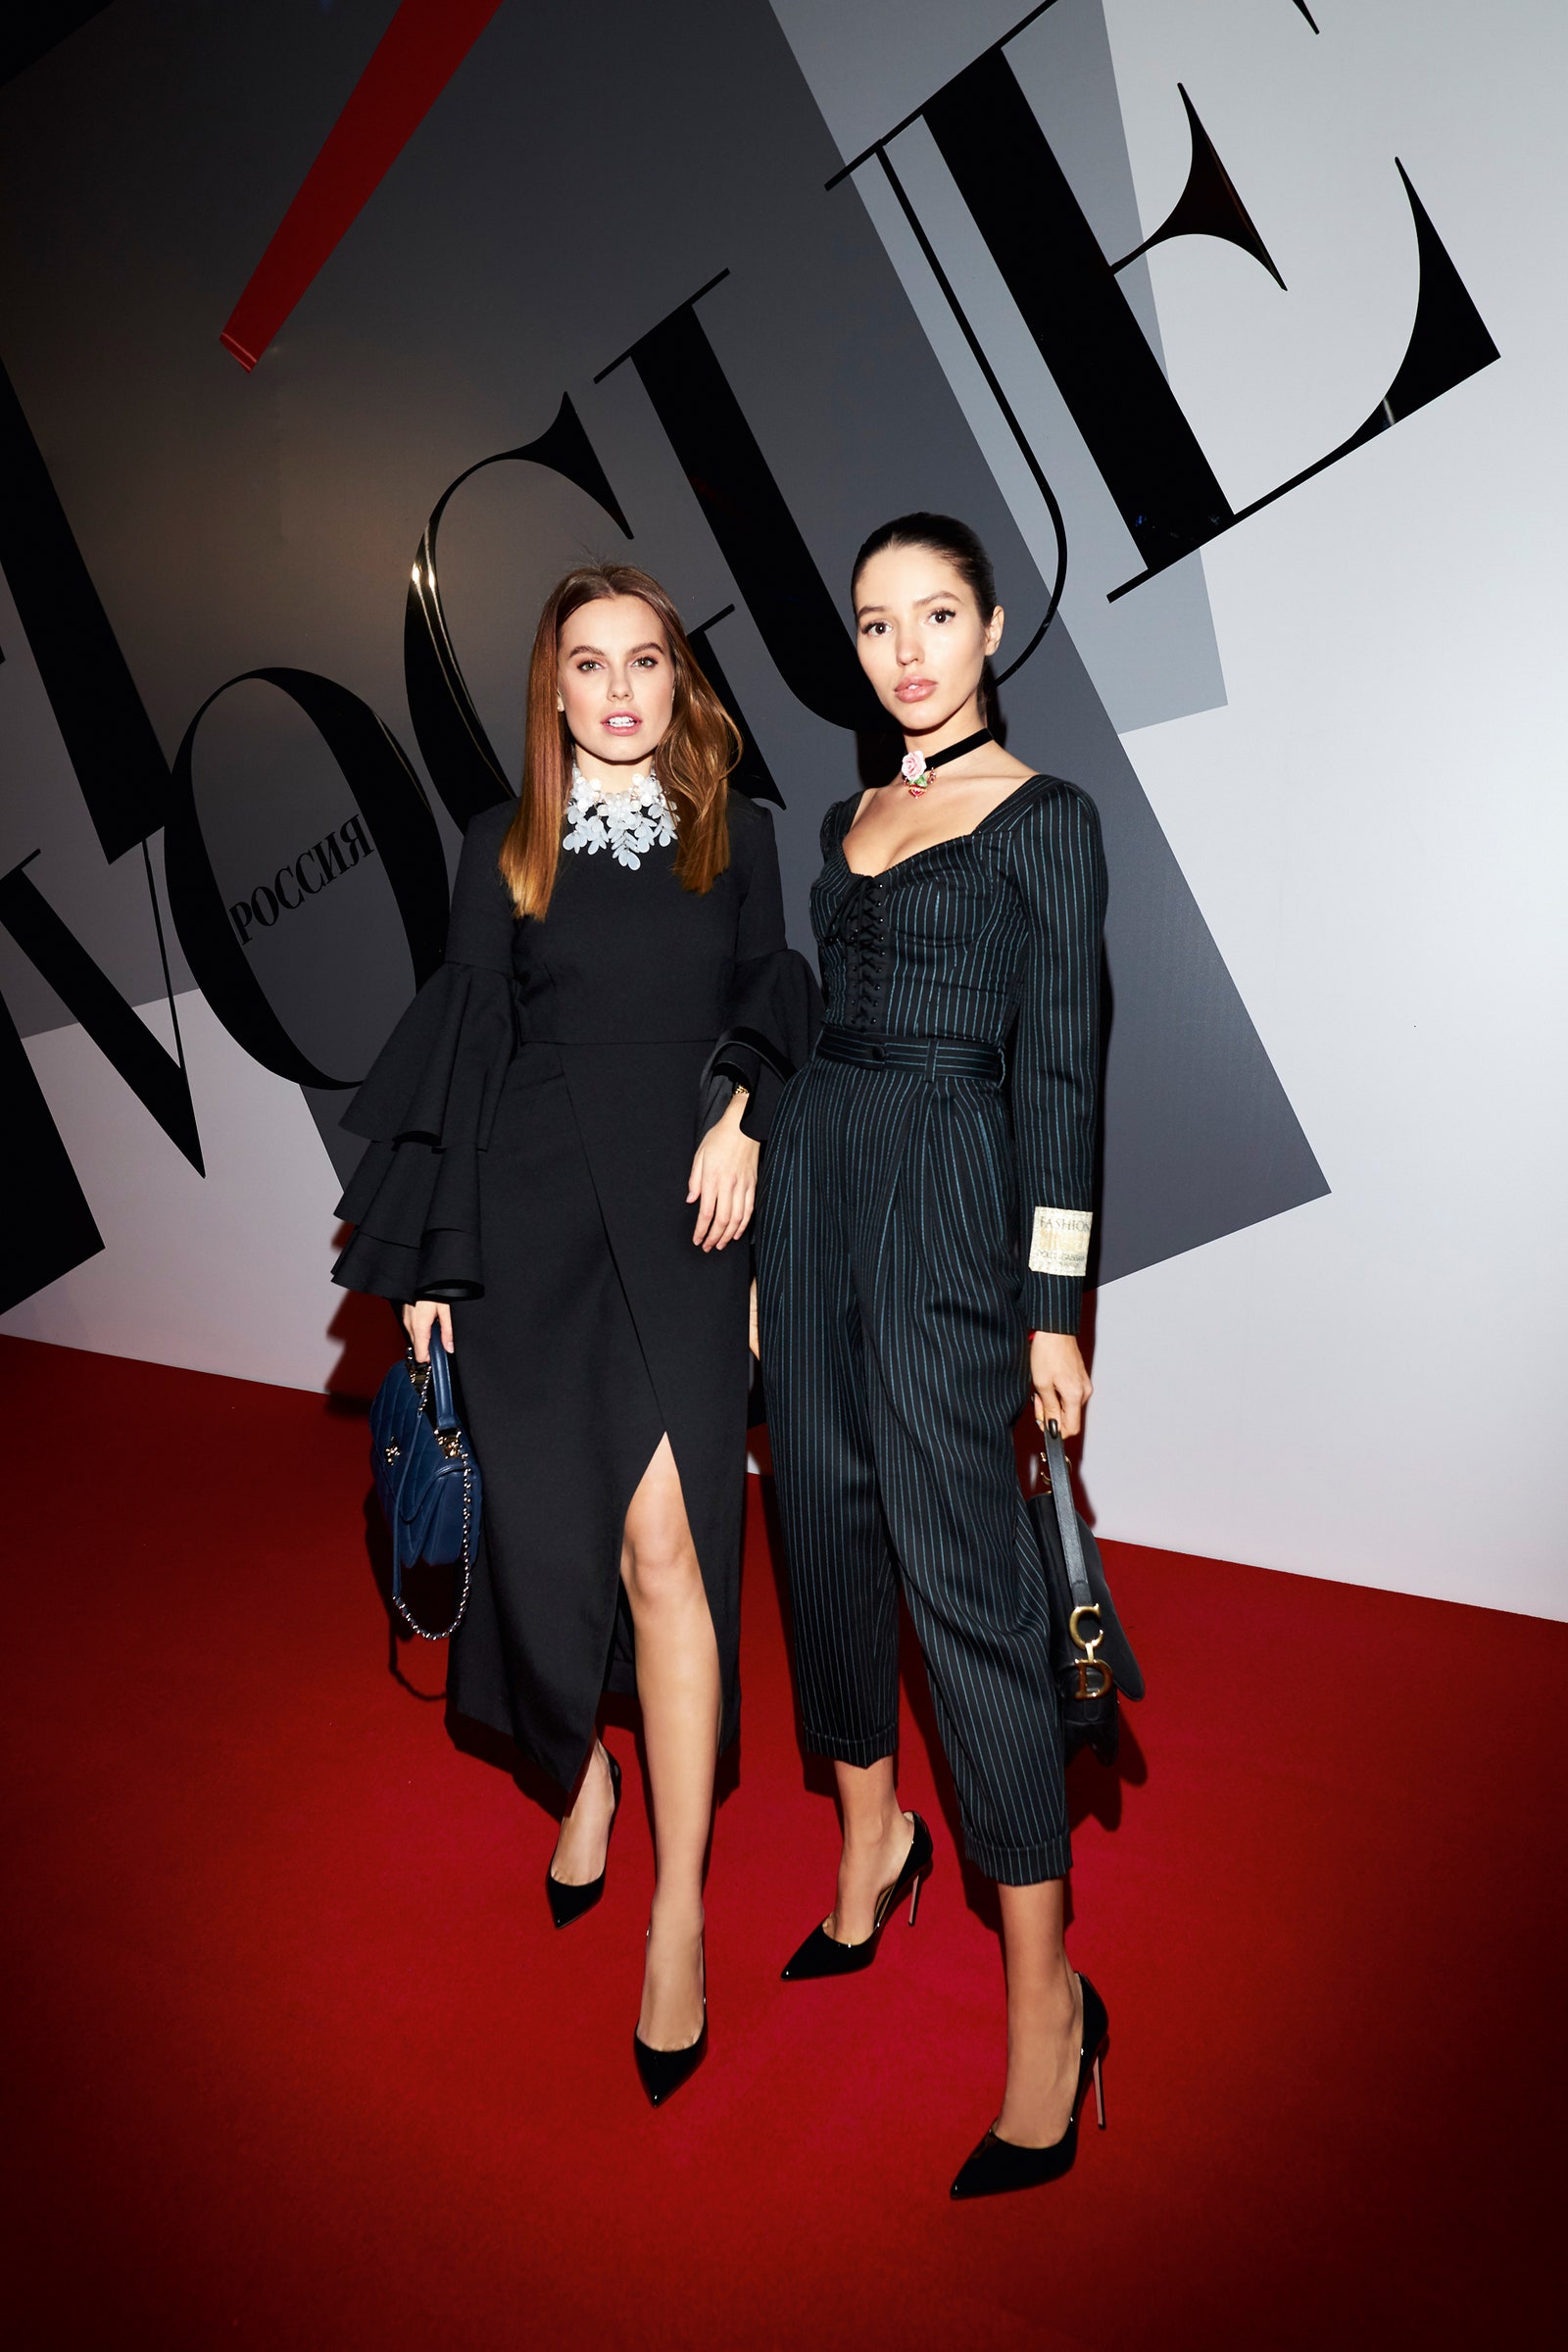 Финалистки шоу «Холостяк» Дарья Клюкина и Виктория Короткова на юбилее журнала Vogue.